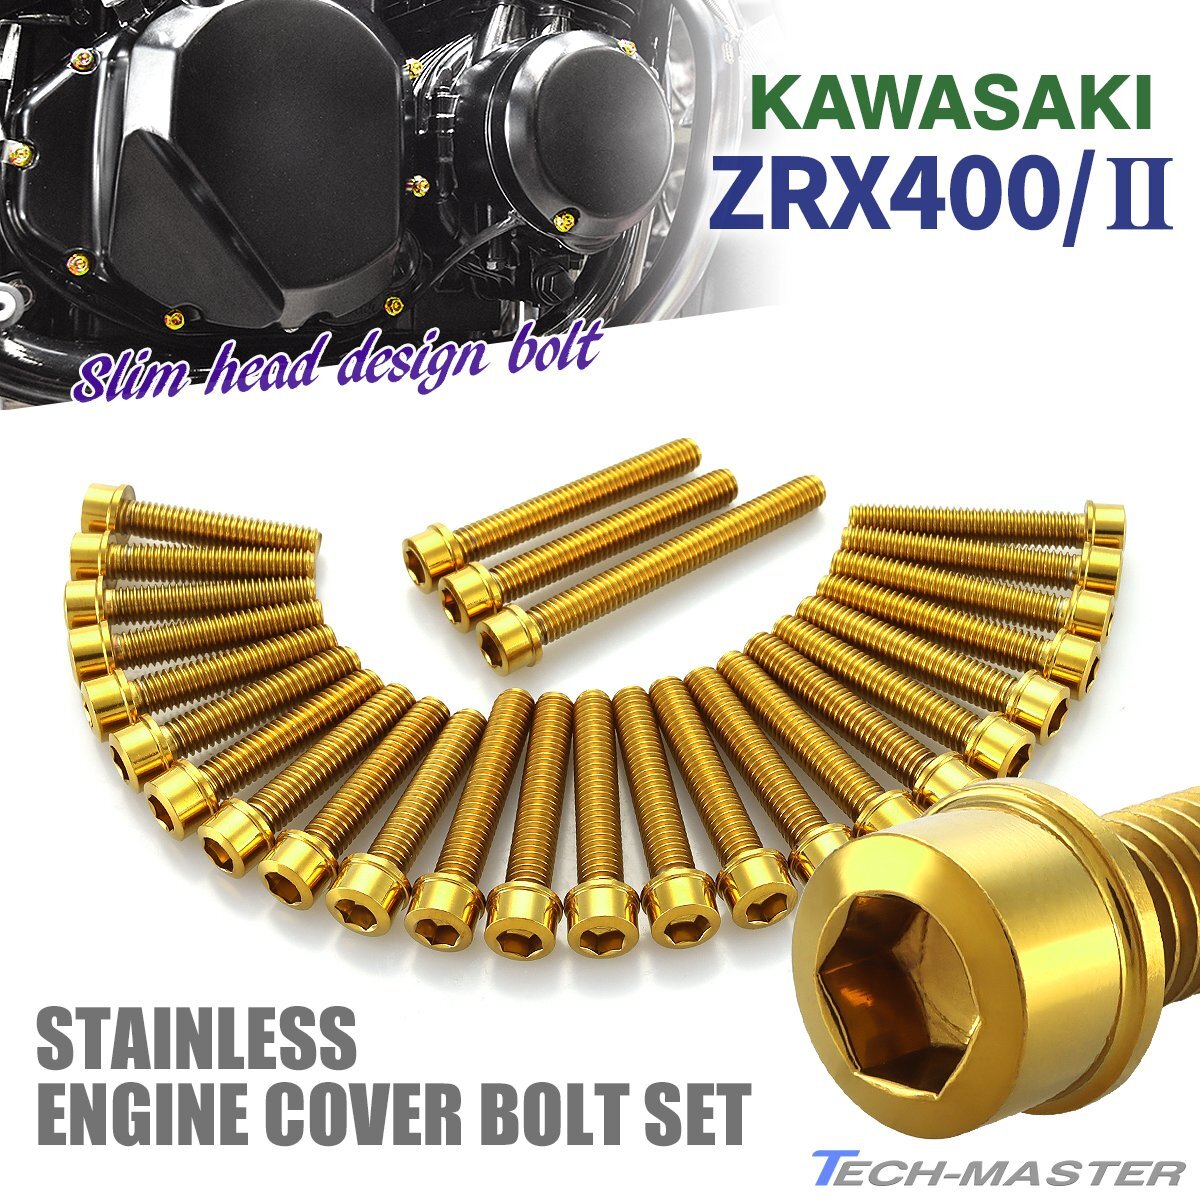 ZRX400/II エンジンカバーボルト 27本セット ステンレス製 スリムヘッド カワサキ車用 ゴールドカラー TB8217_画像1